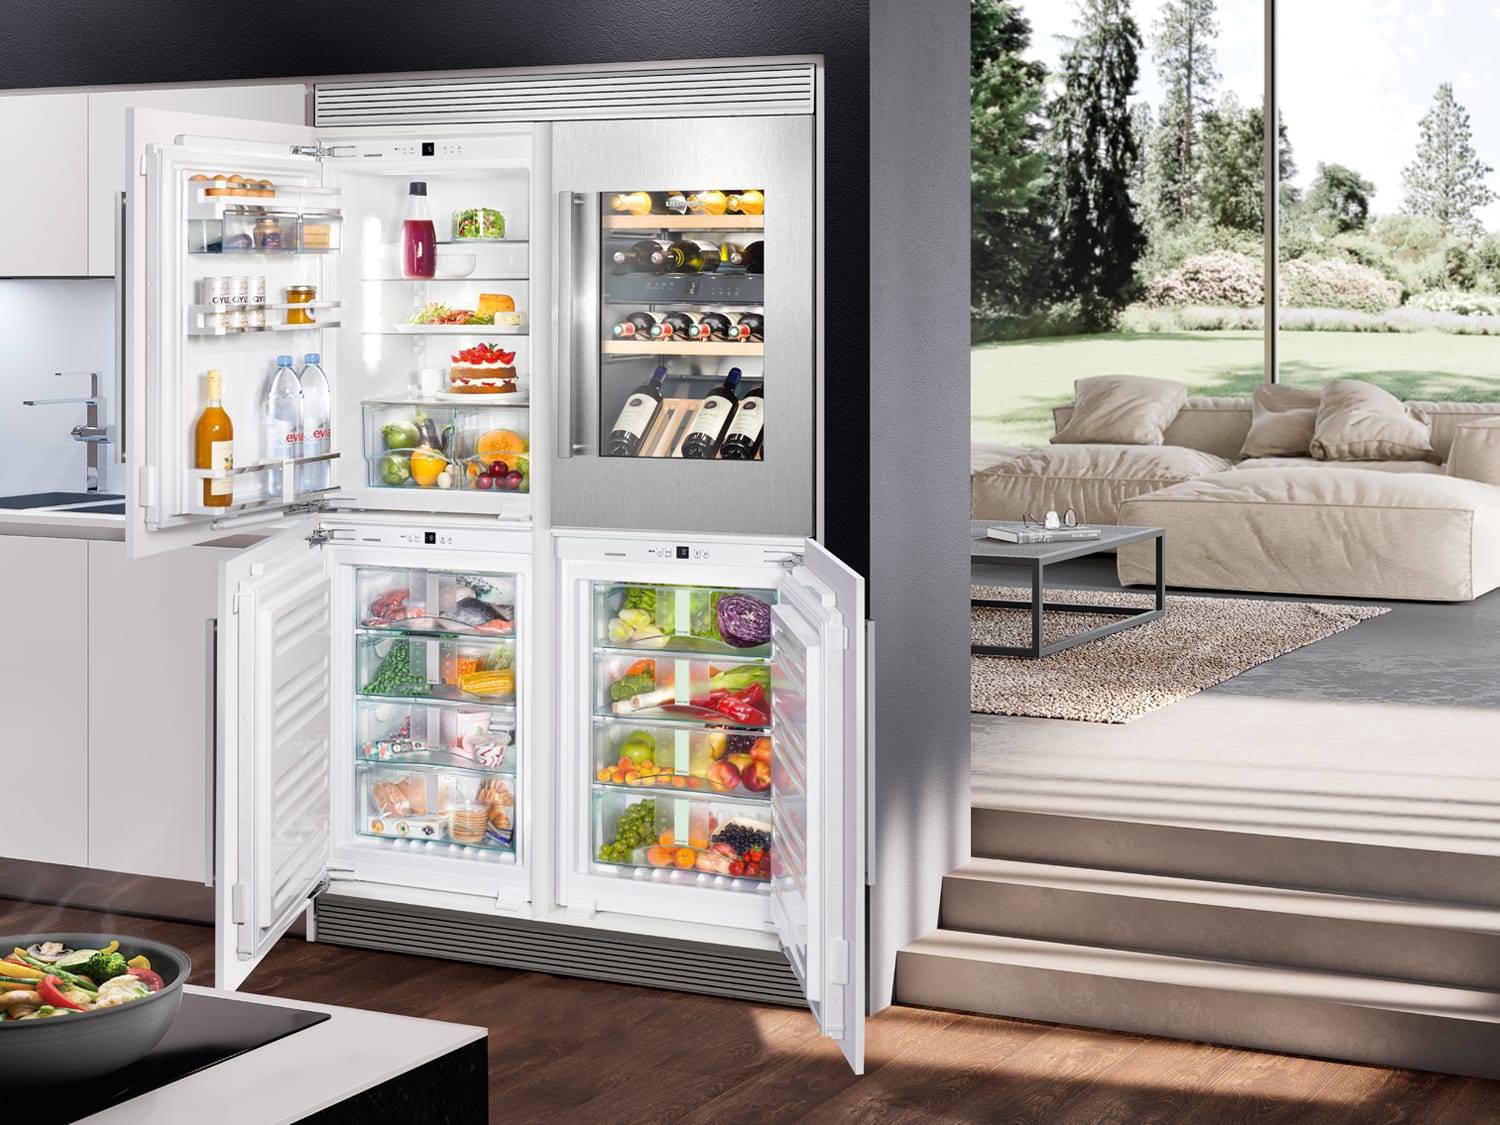 Обзор холодильников liebherr: характеристики, модели, отзывы